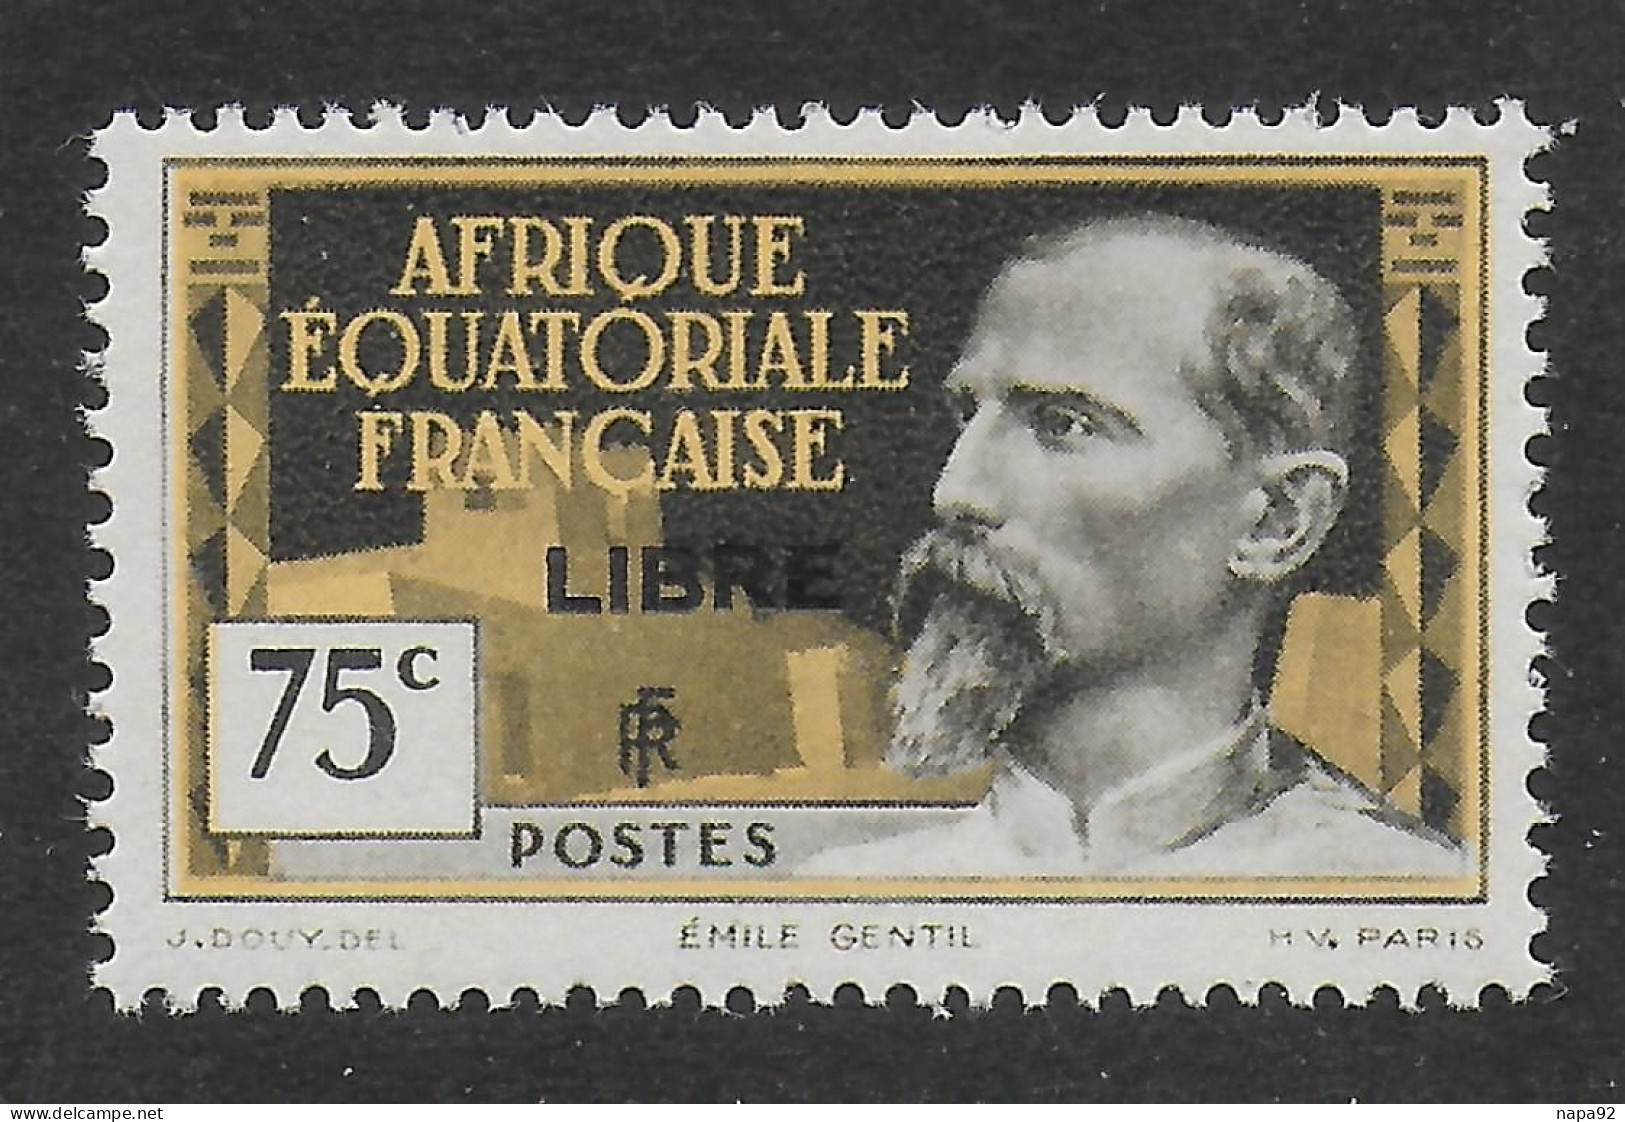 AFRIQUE EQUATORIALE FRANCAISE - AEF - A.E.F. - 1940 - YT 112** - Nuevos